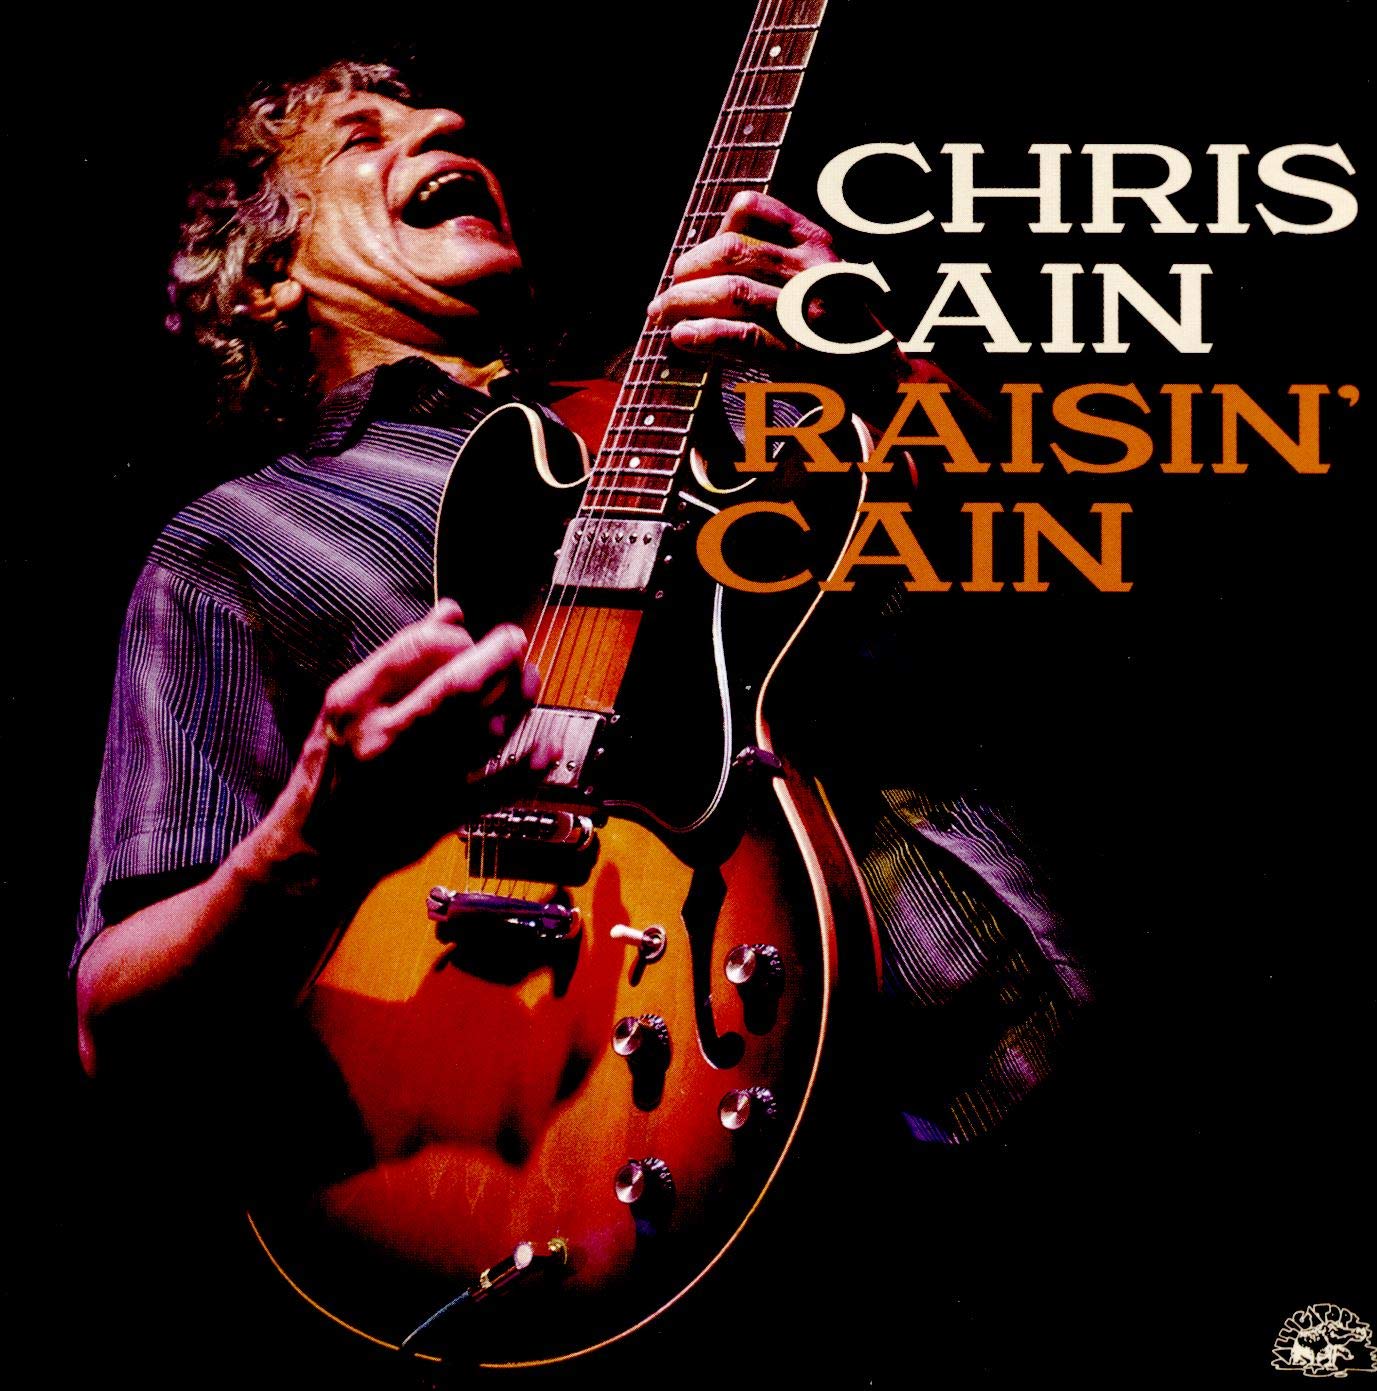 Chris Cain - Raisin’ Cain